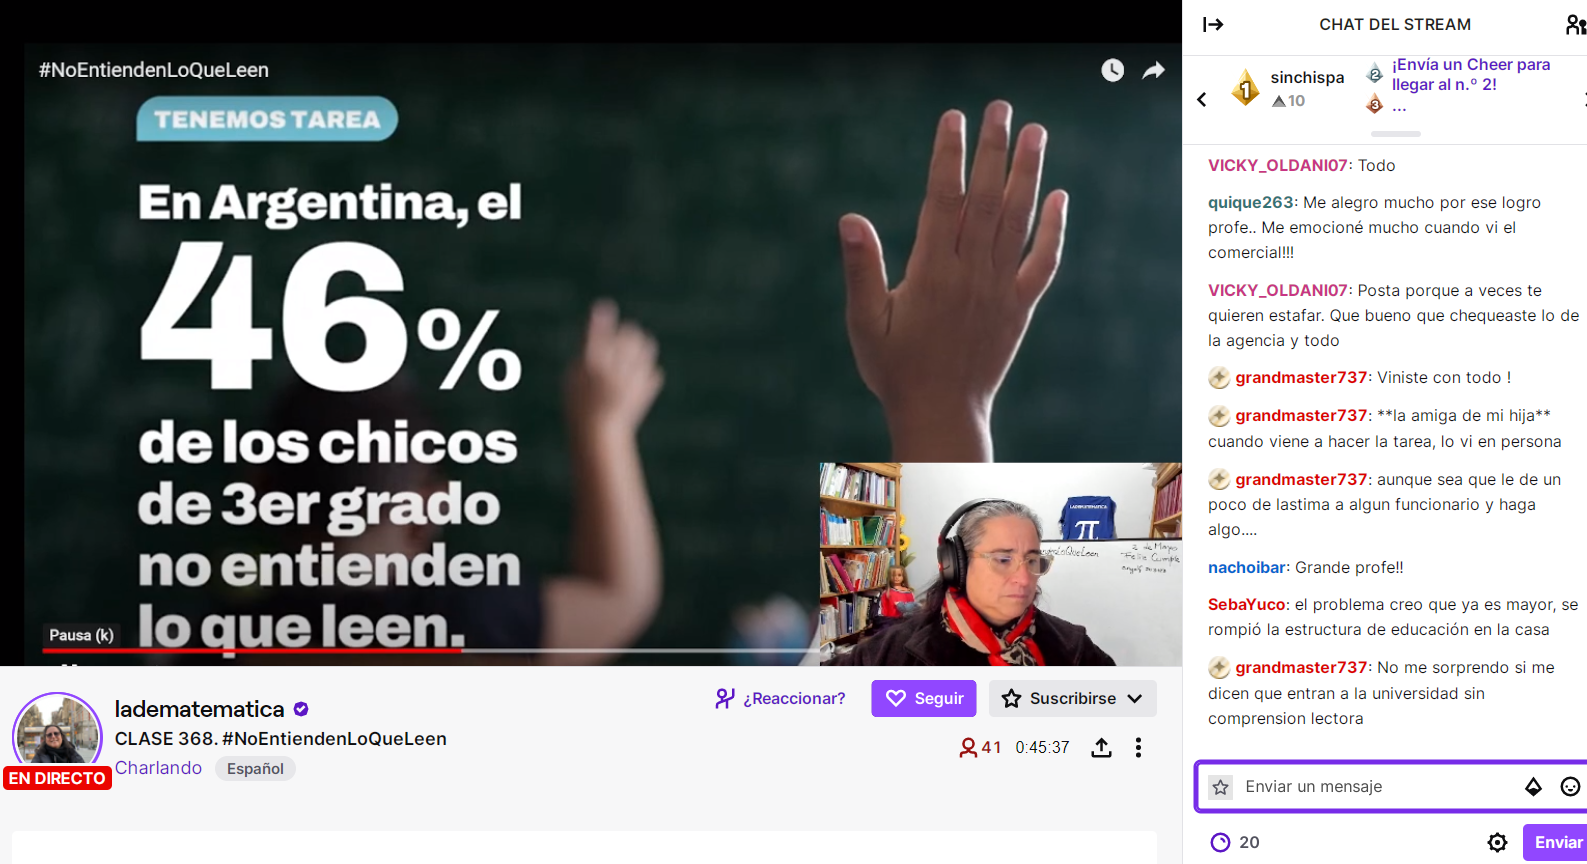 La streamer Adriana González, más conocida en Twitch como “La de matemáticas”, presentó ayer la campaña #NoEntiendenLoQueLeen.